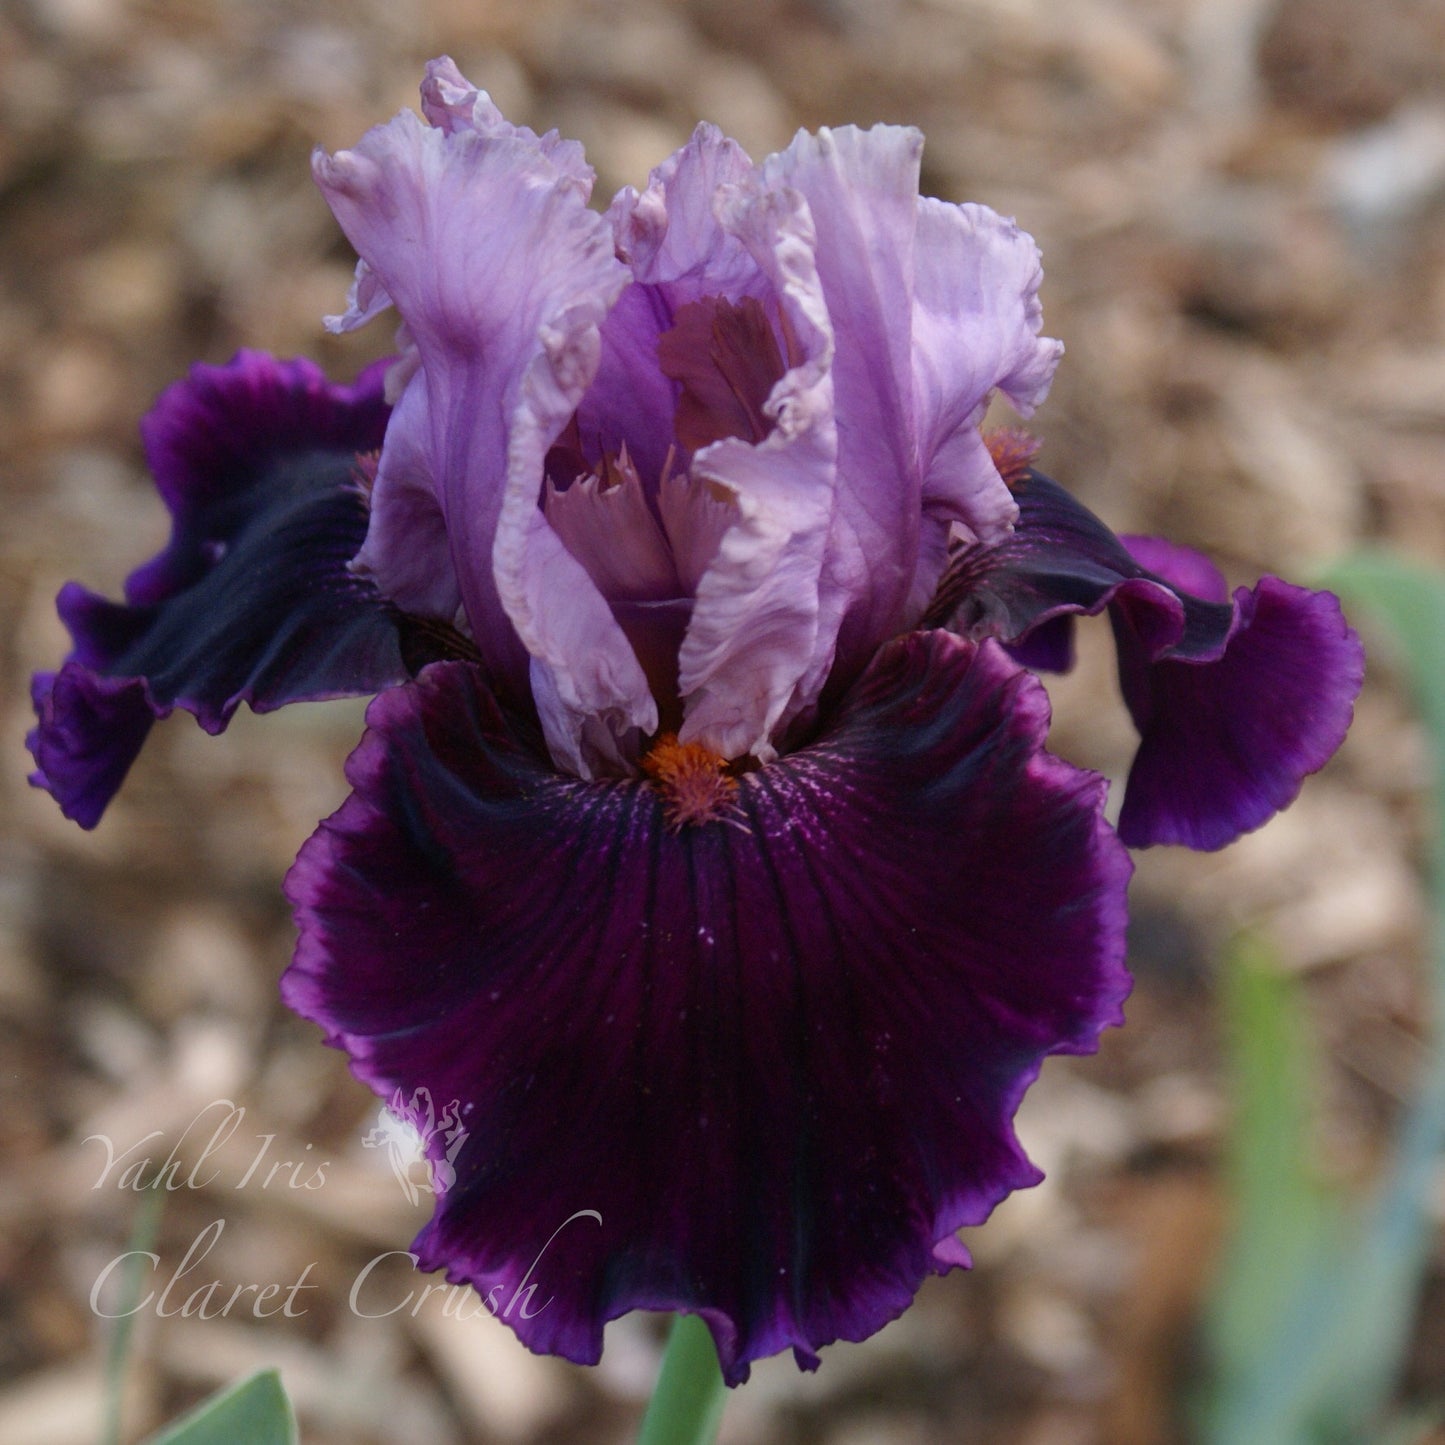 Claret Crush - Tall bearded iris